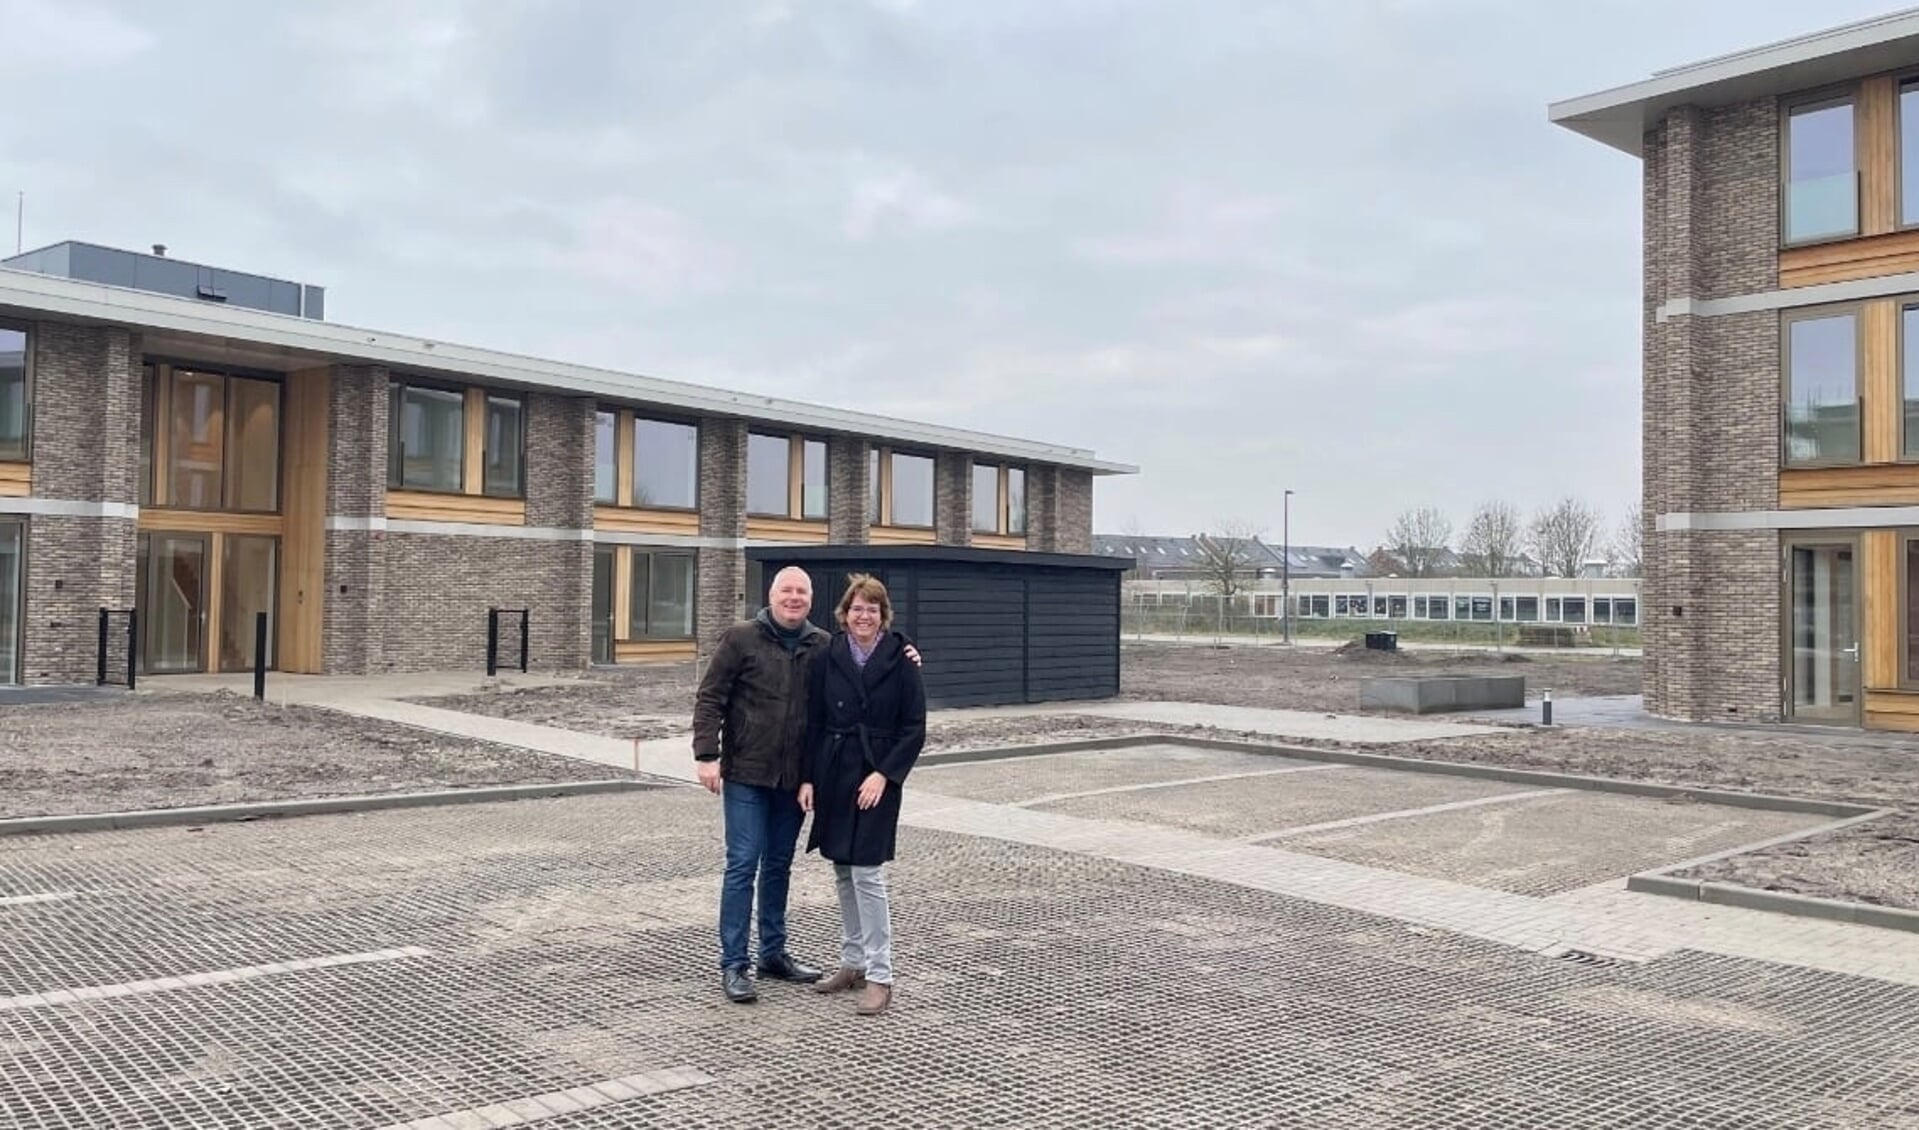 Ronald en Annemieke Roeleveld, het echtpaar dat Gastenhuis Gorinchem - kleinschalig thuis voor mensen met dementie - leidt en er vlakbij woont.